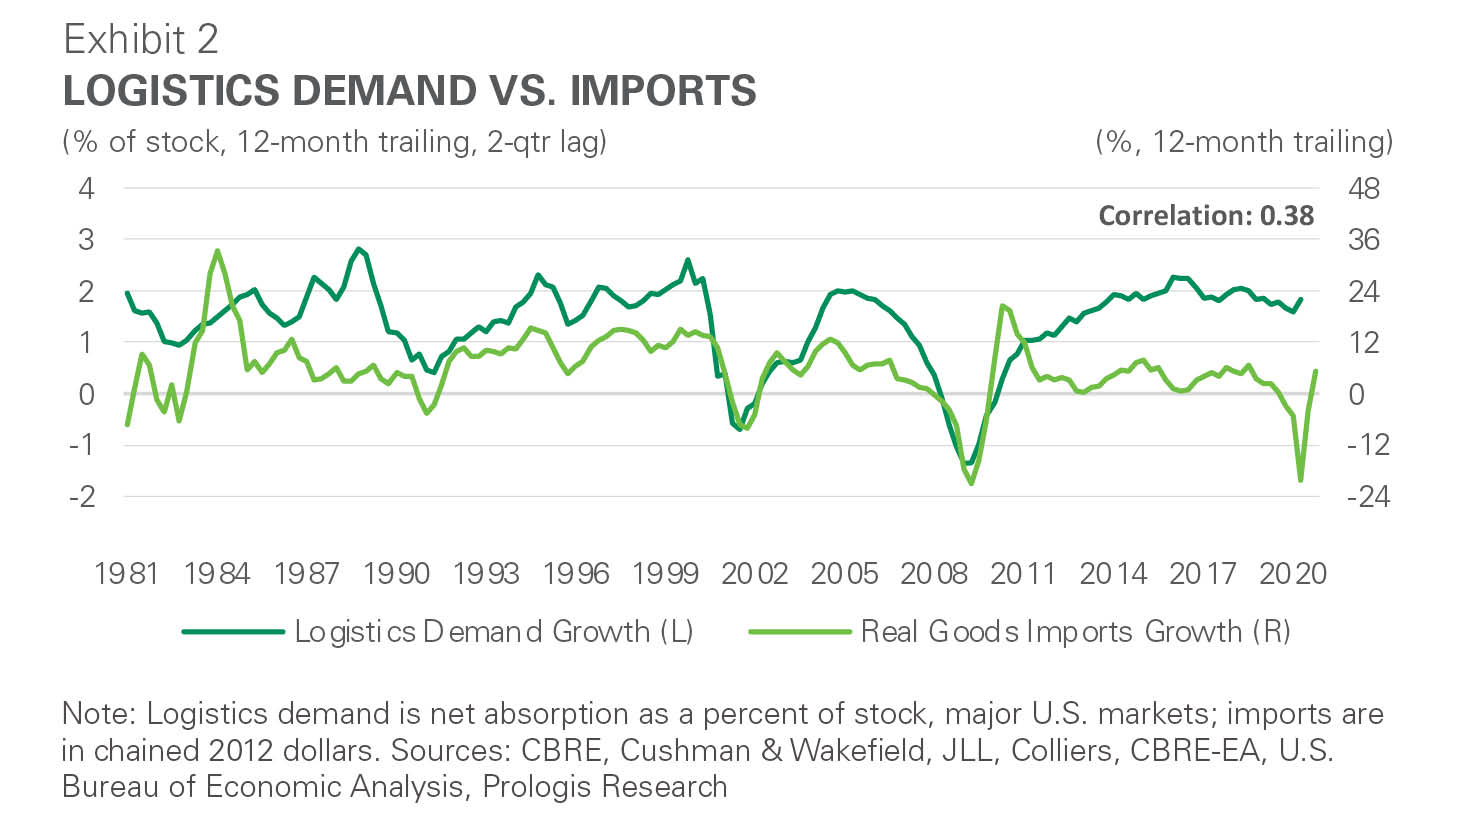 Exhibit 2: Logistics demand vs. imports